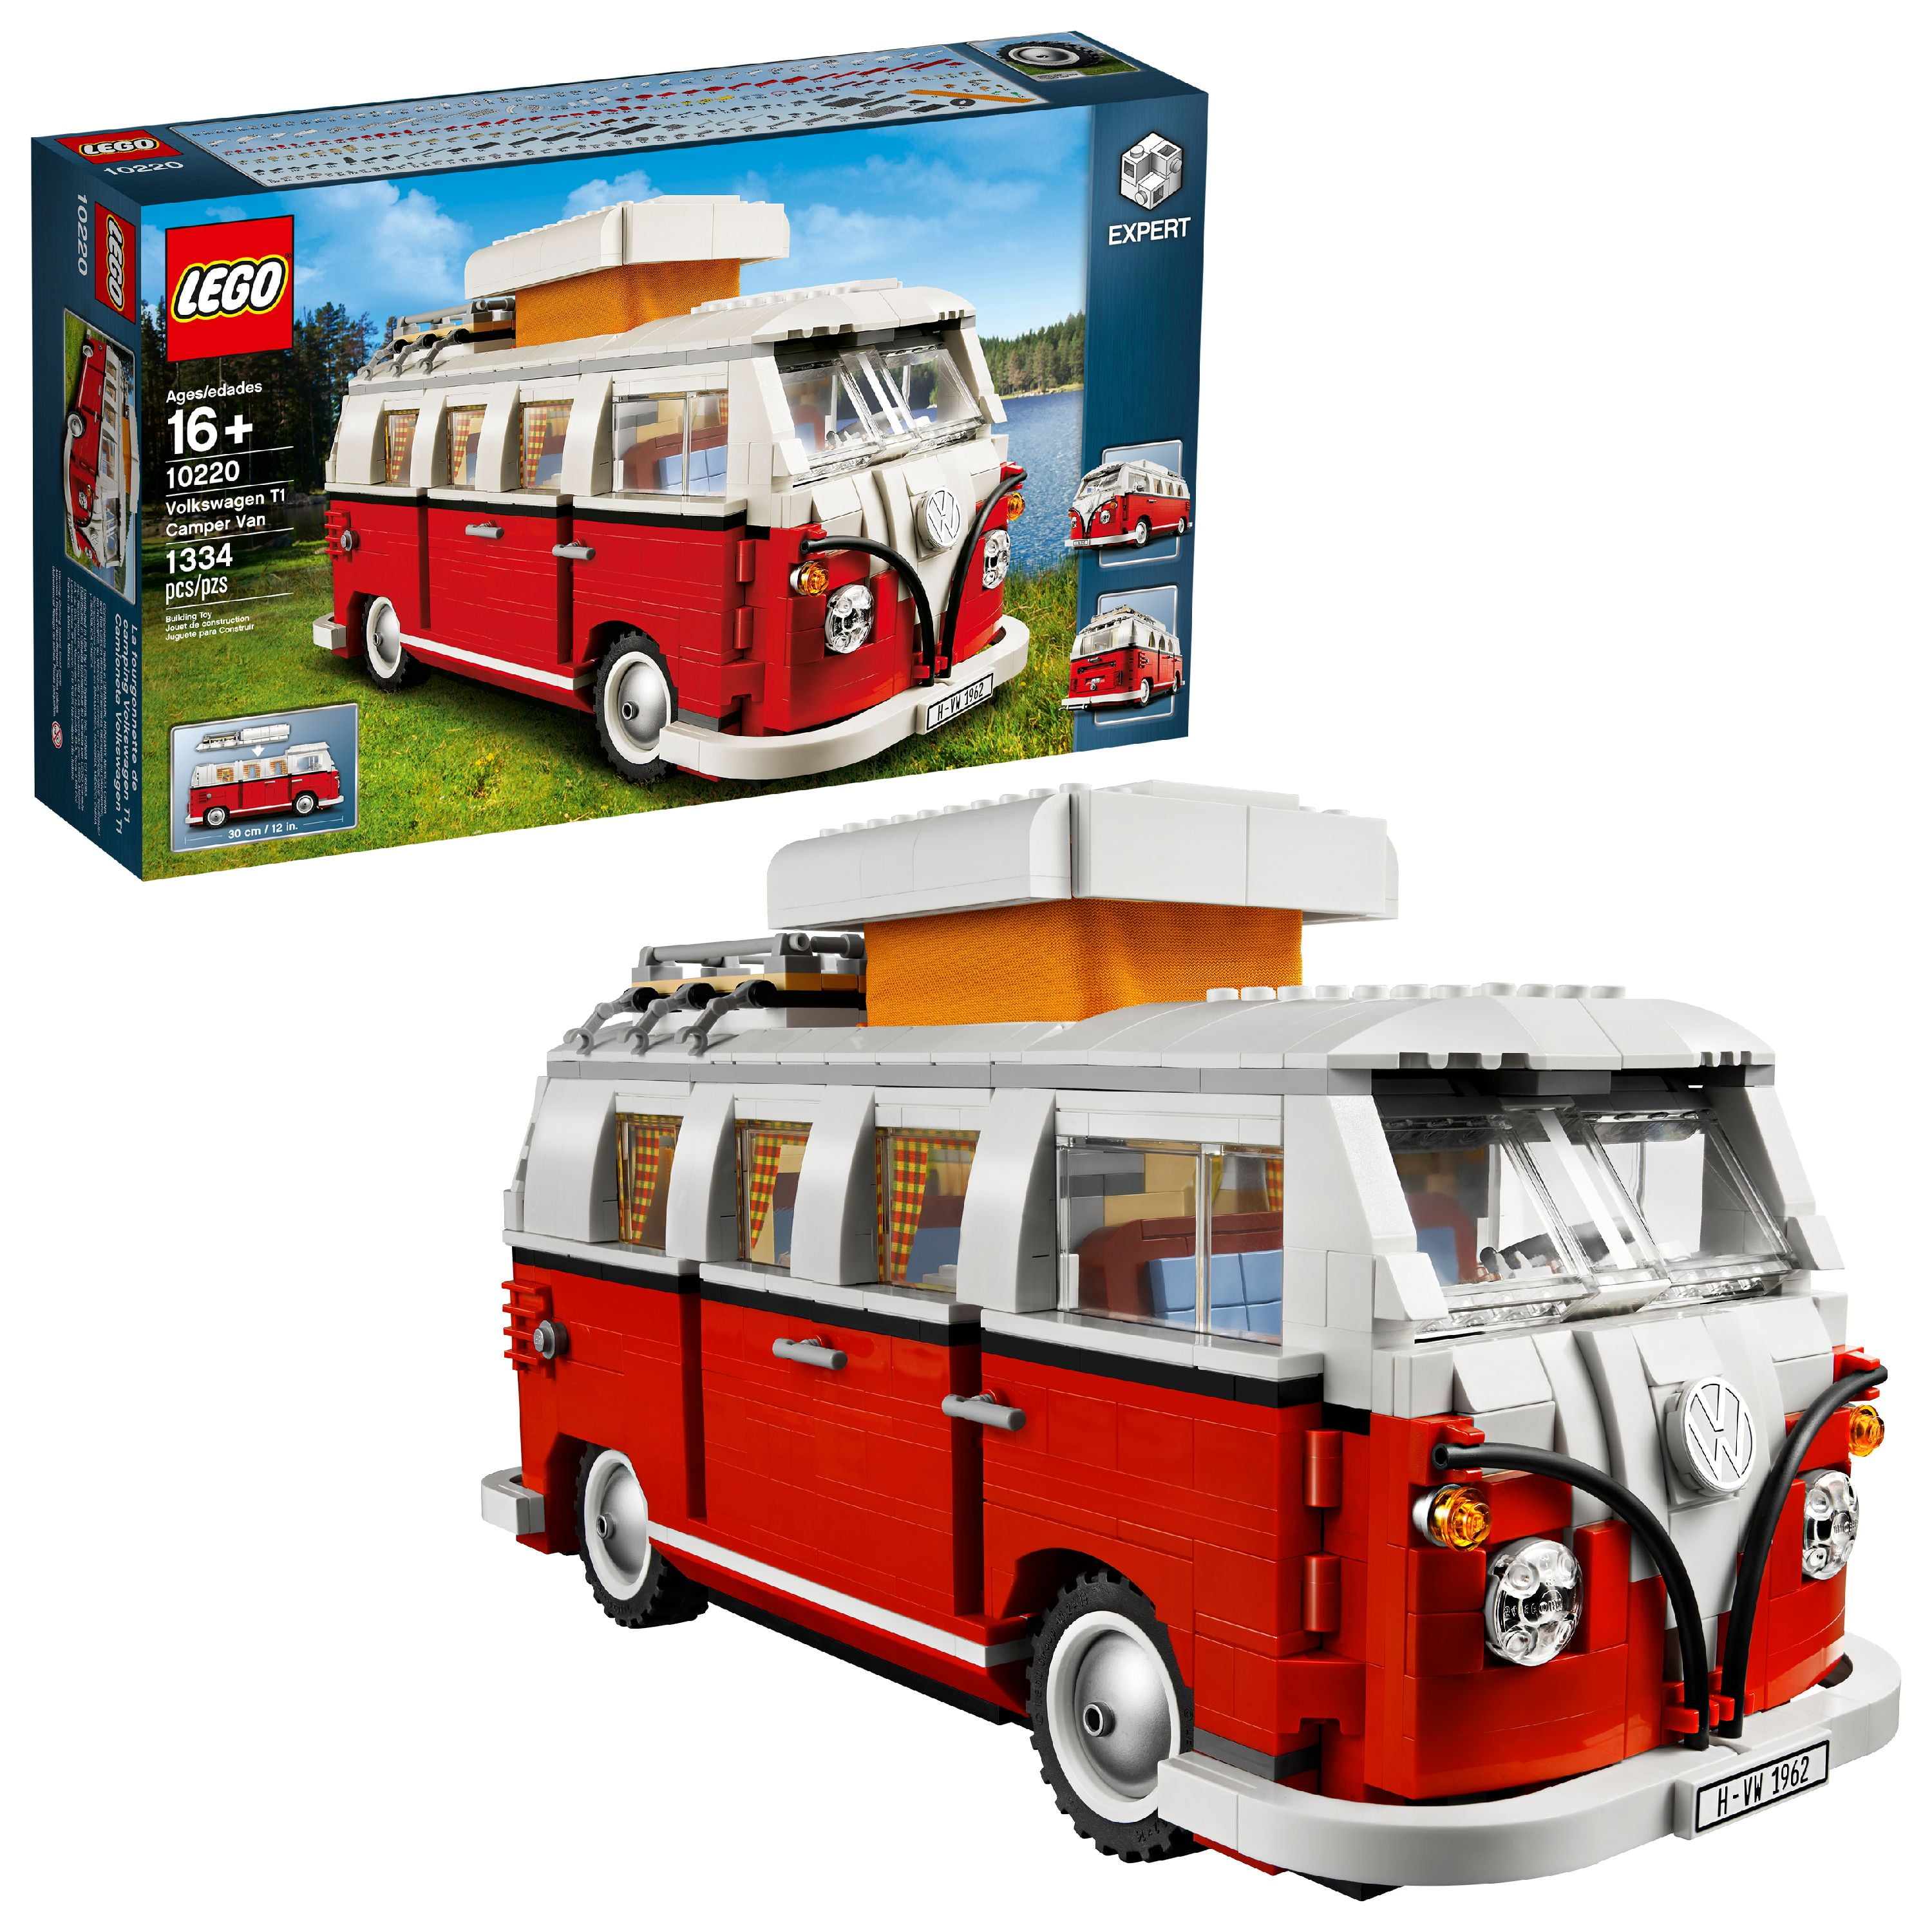 LEGO Creator Volkswagen Camper Van Walmart.com